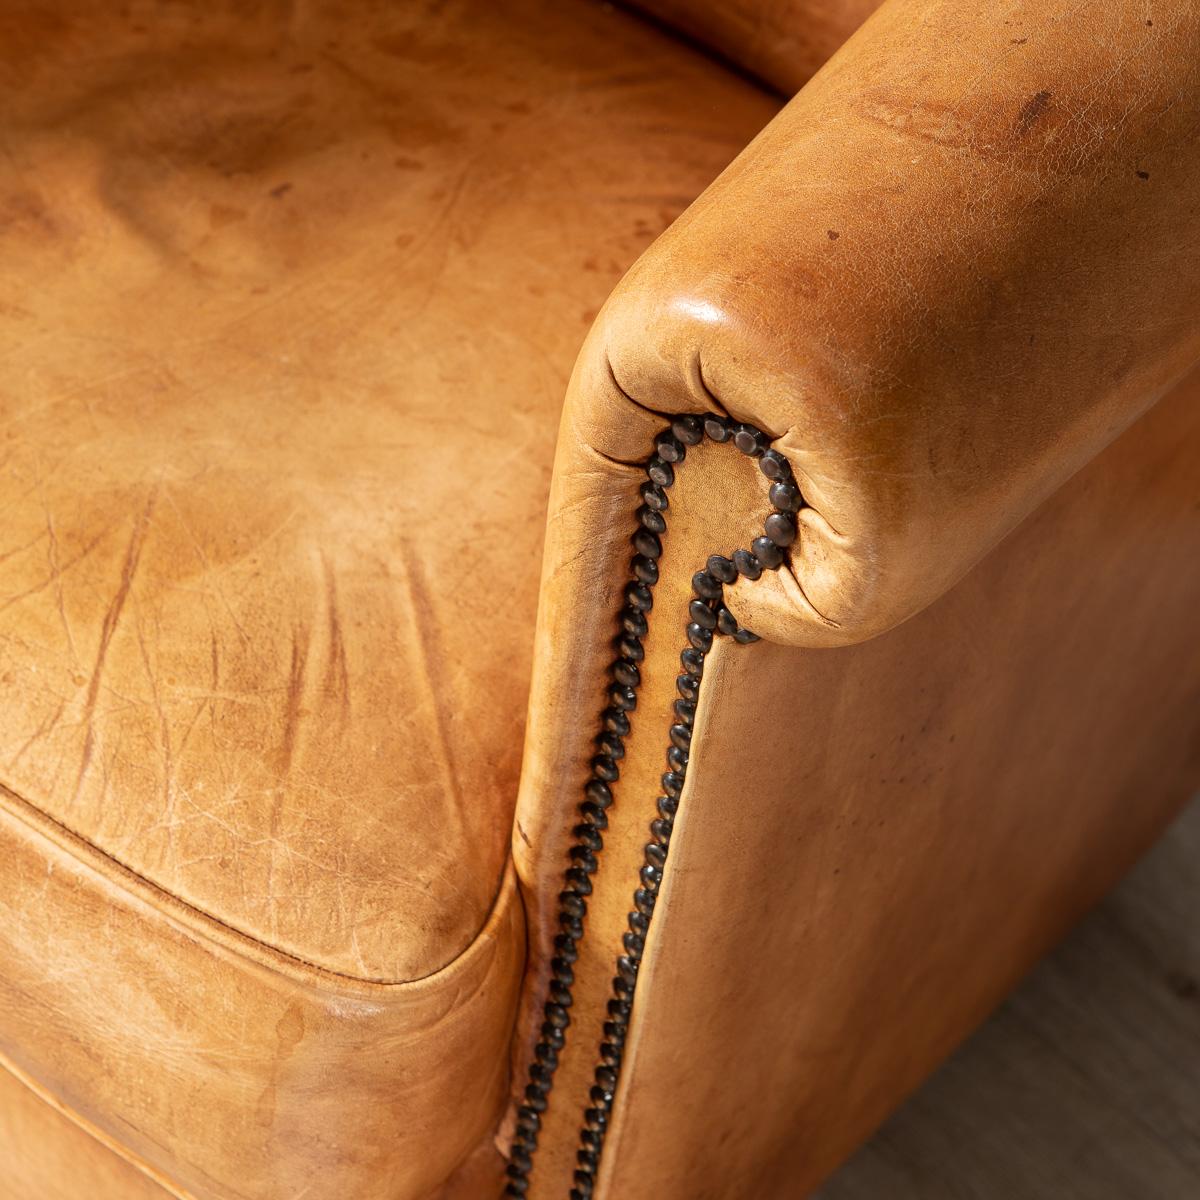 20th Century Dutch Sheepskin Leather Tub Chair 2